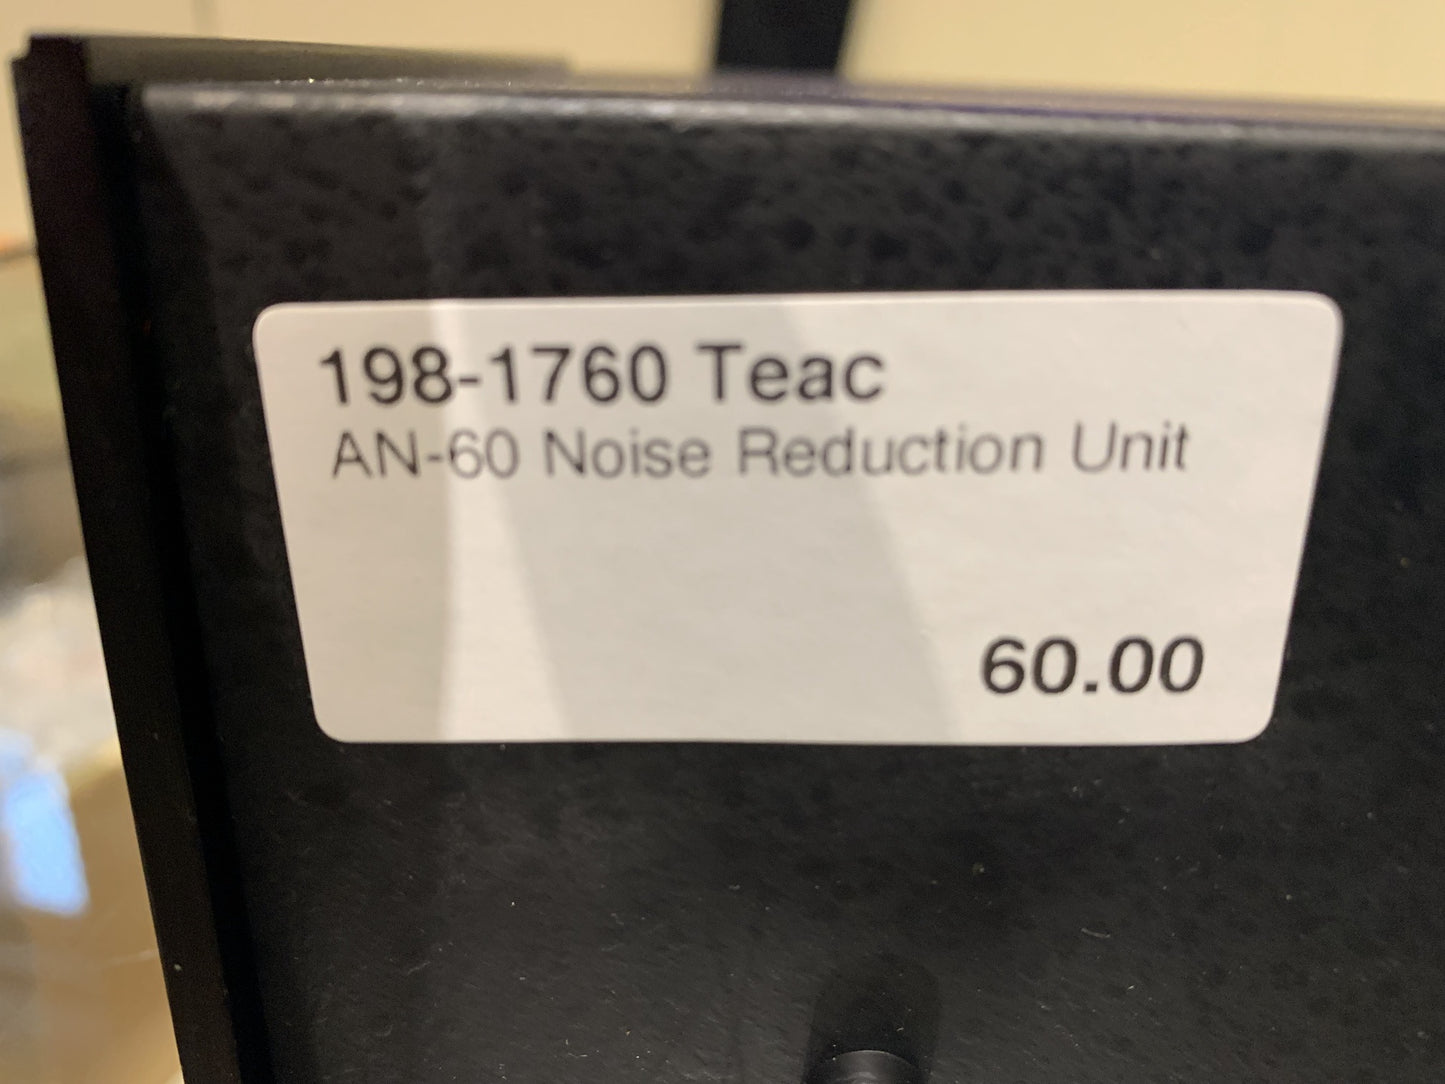 Teac AN-60 Noise Reduction Unit